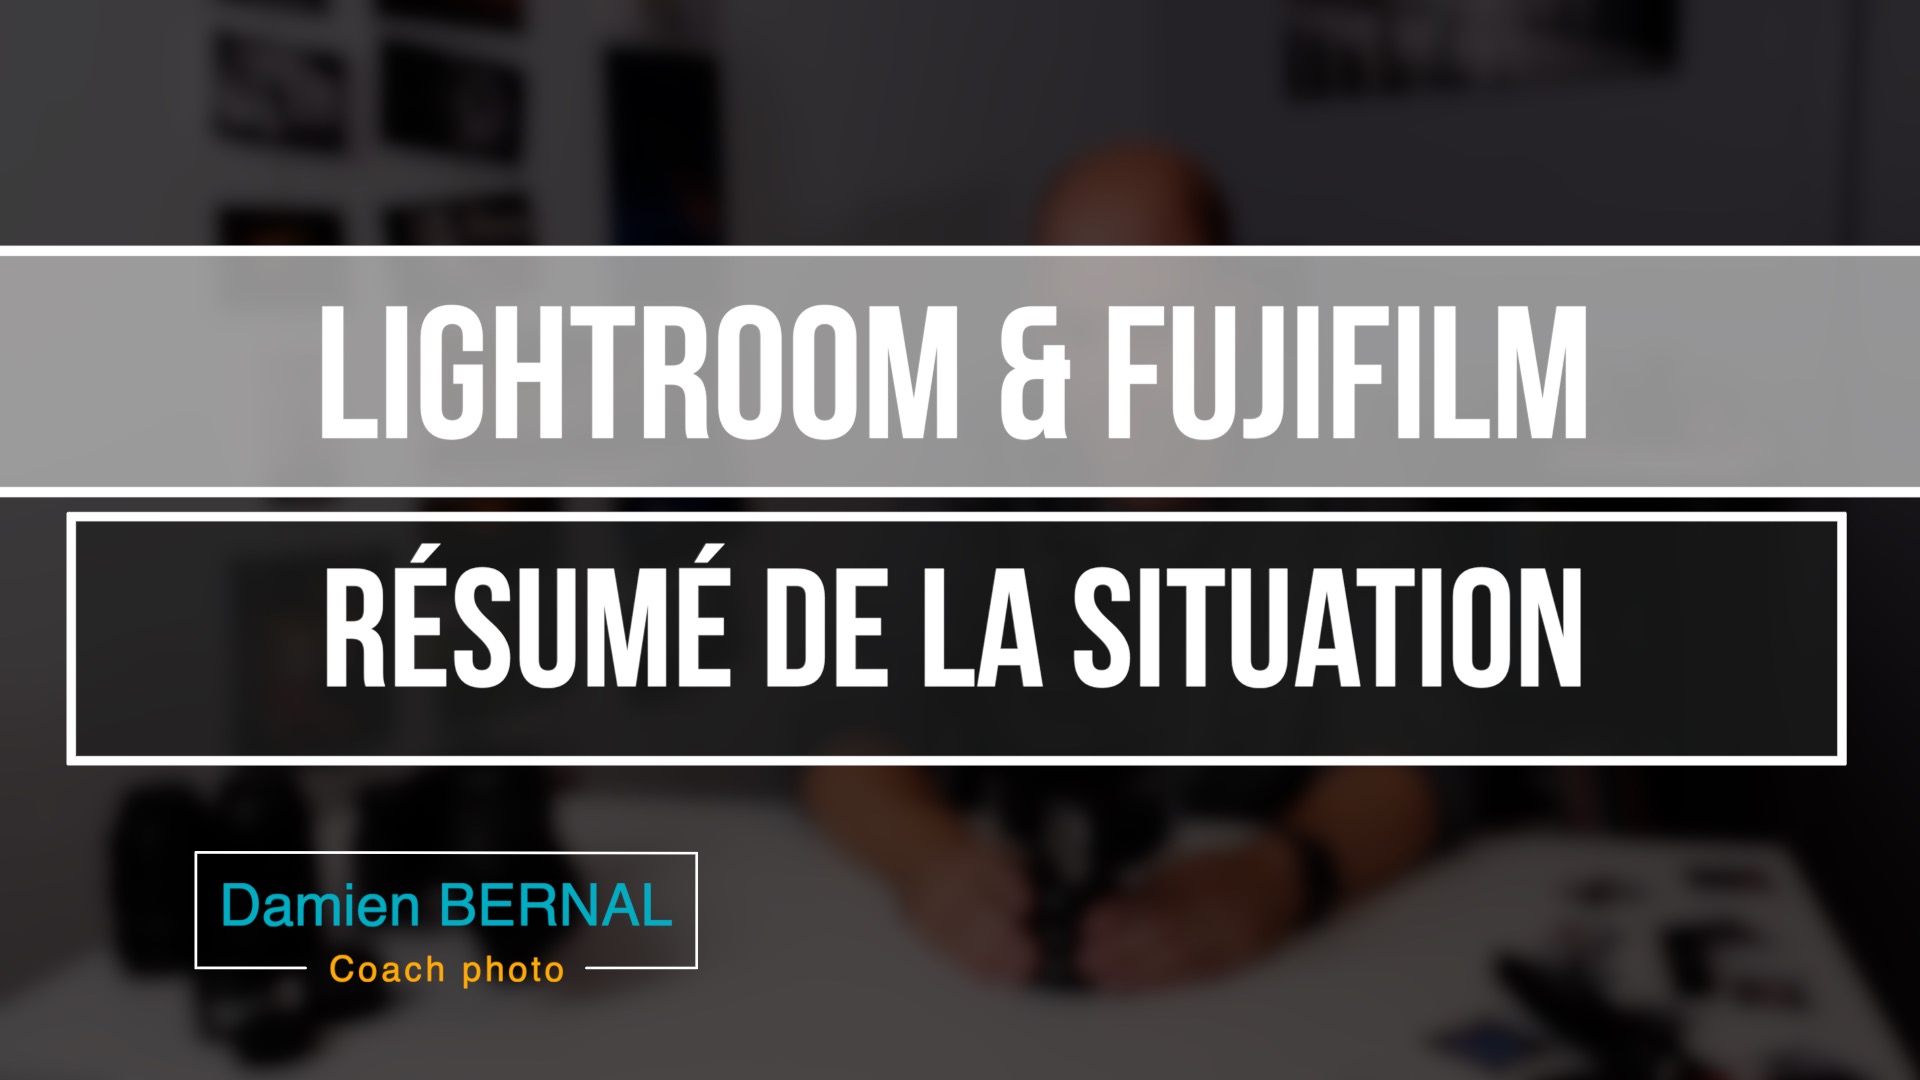 Lightroom & Fujifilm